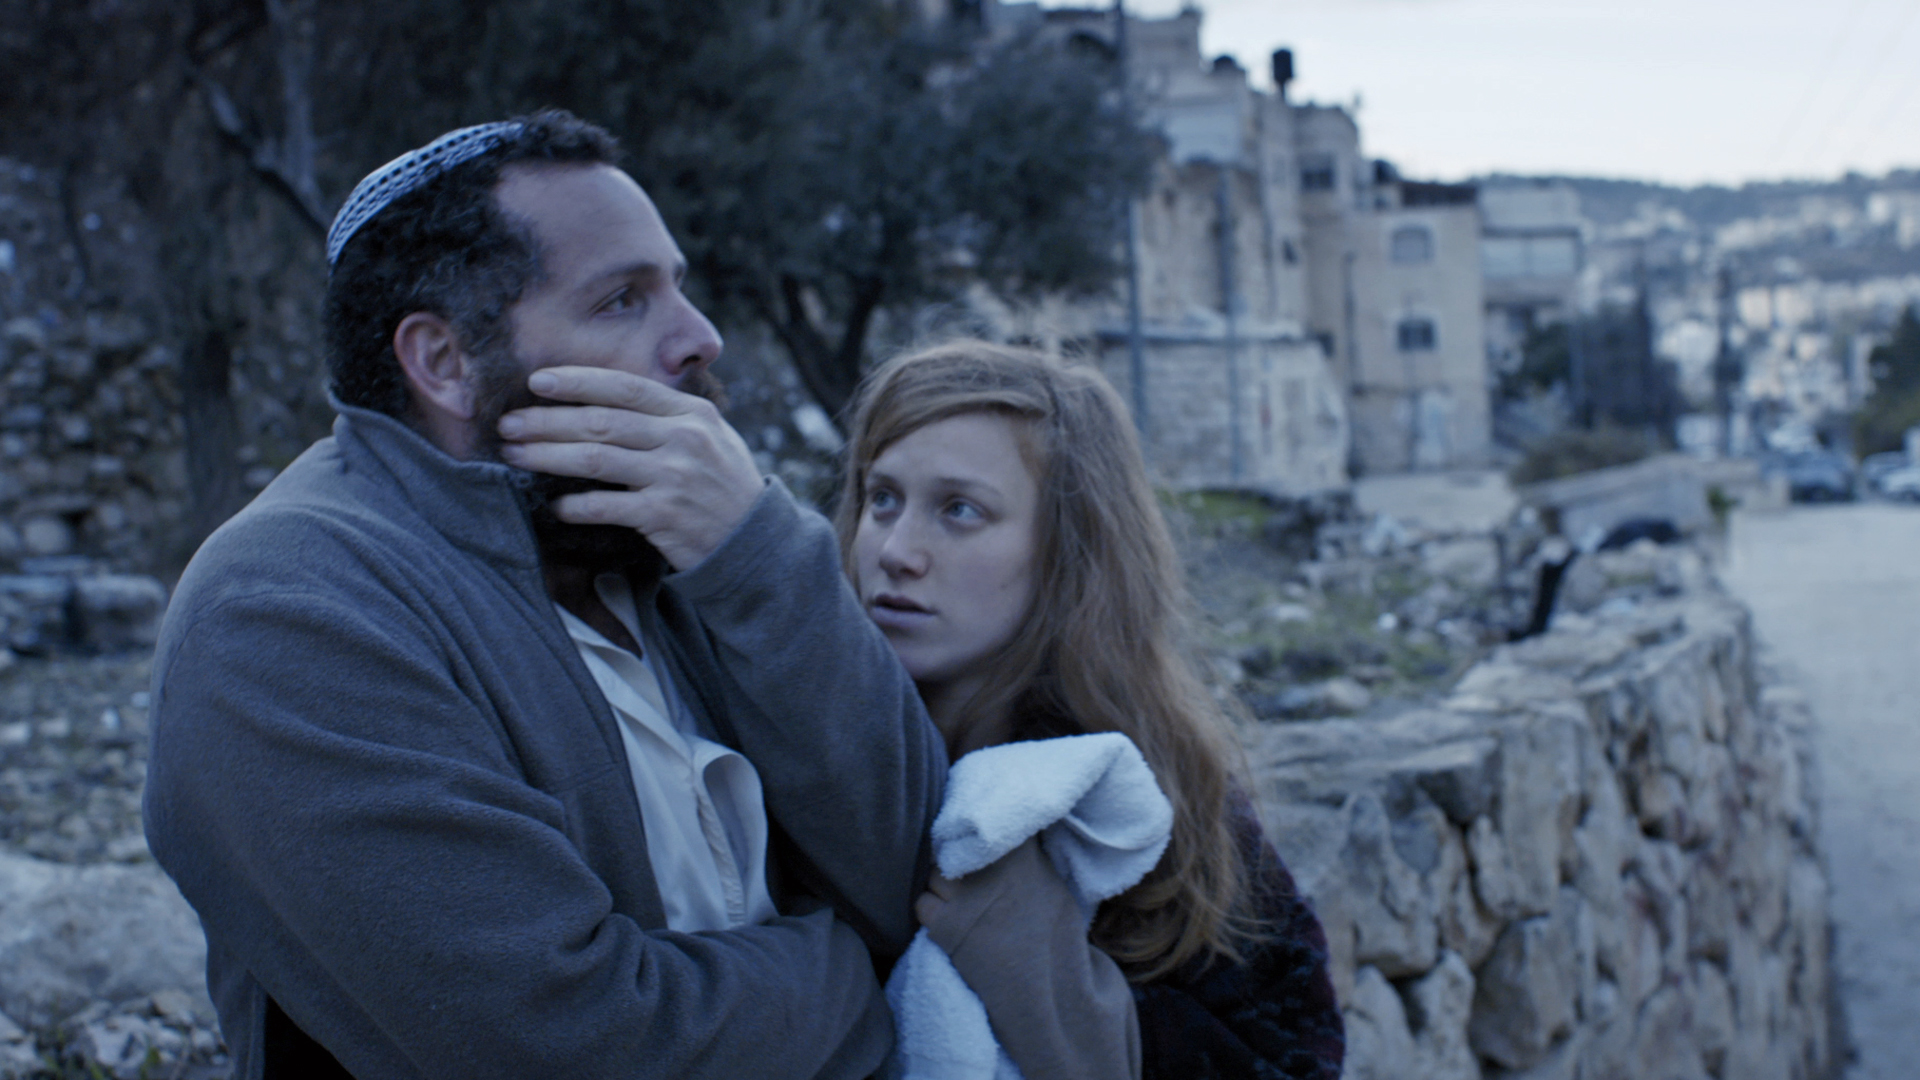 Der israelische Debütfilm „Para Aduma“ (Rote Kuh) von der Regisseurin Tsivia Barkai, der die Geschichte einer ultra-orthodoxen Familie in Ostjerusalem erzählt, sorgte dieses Jahr auf der Berlinale für Aufsehen